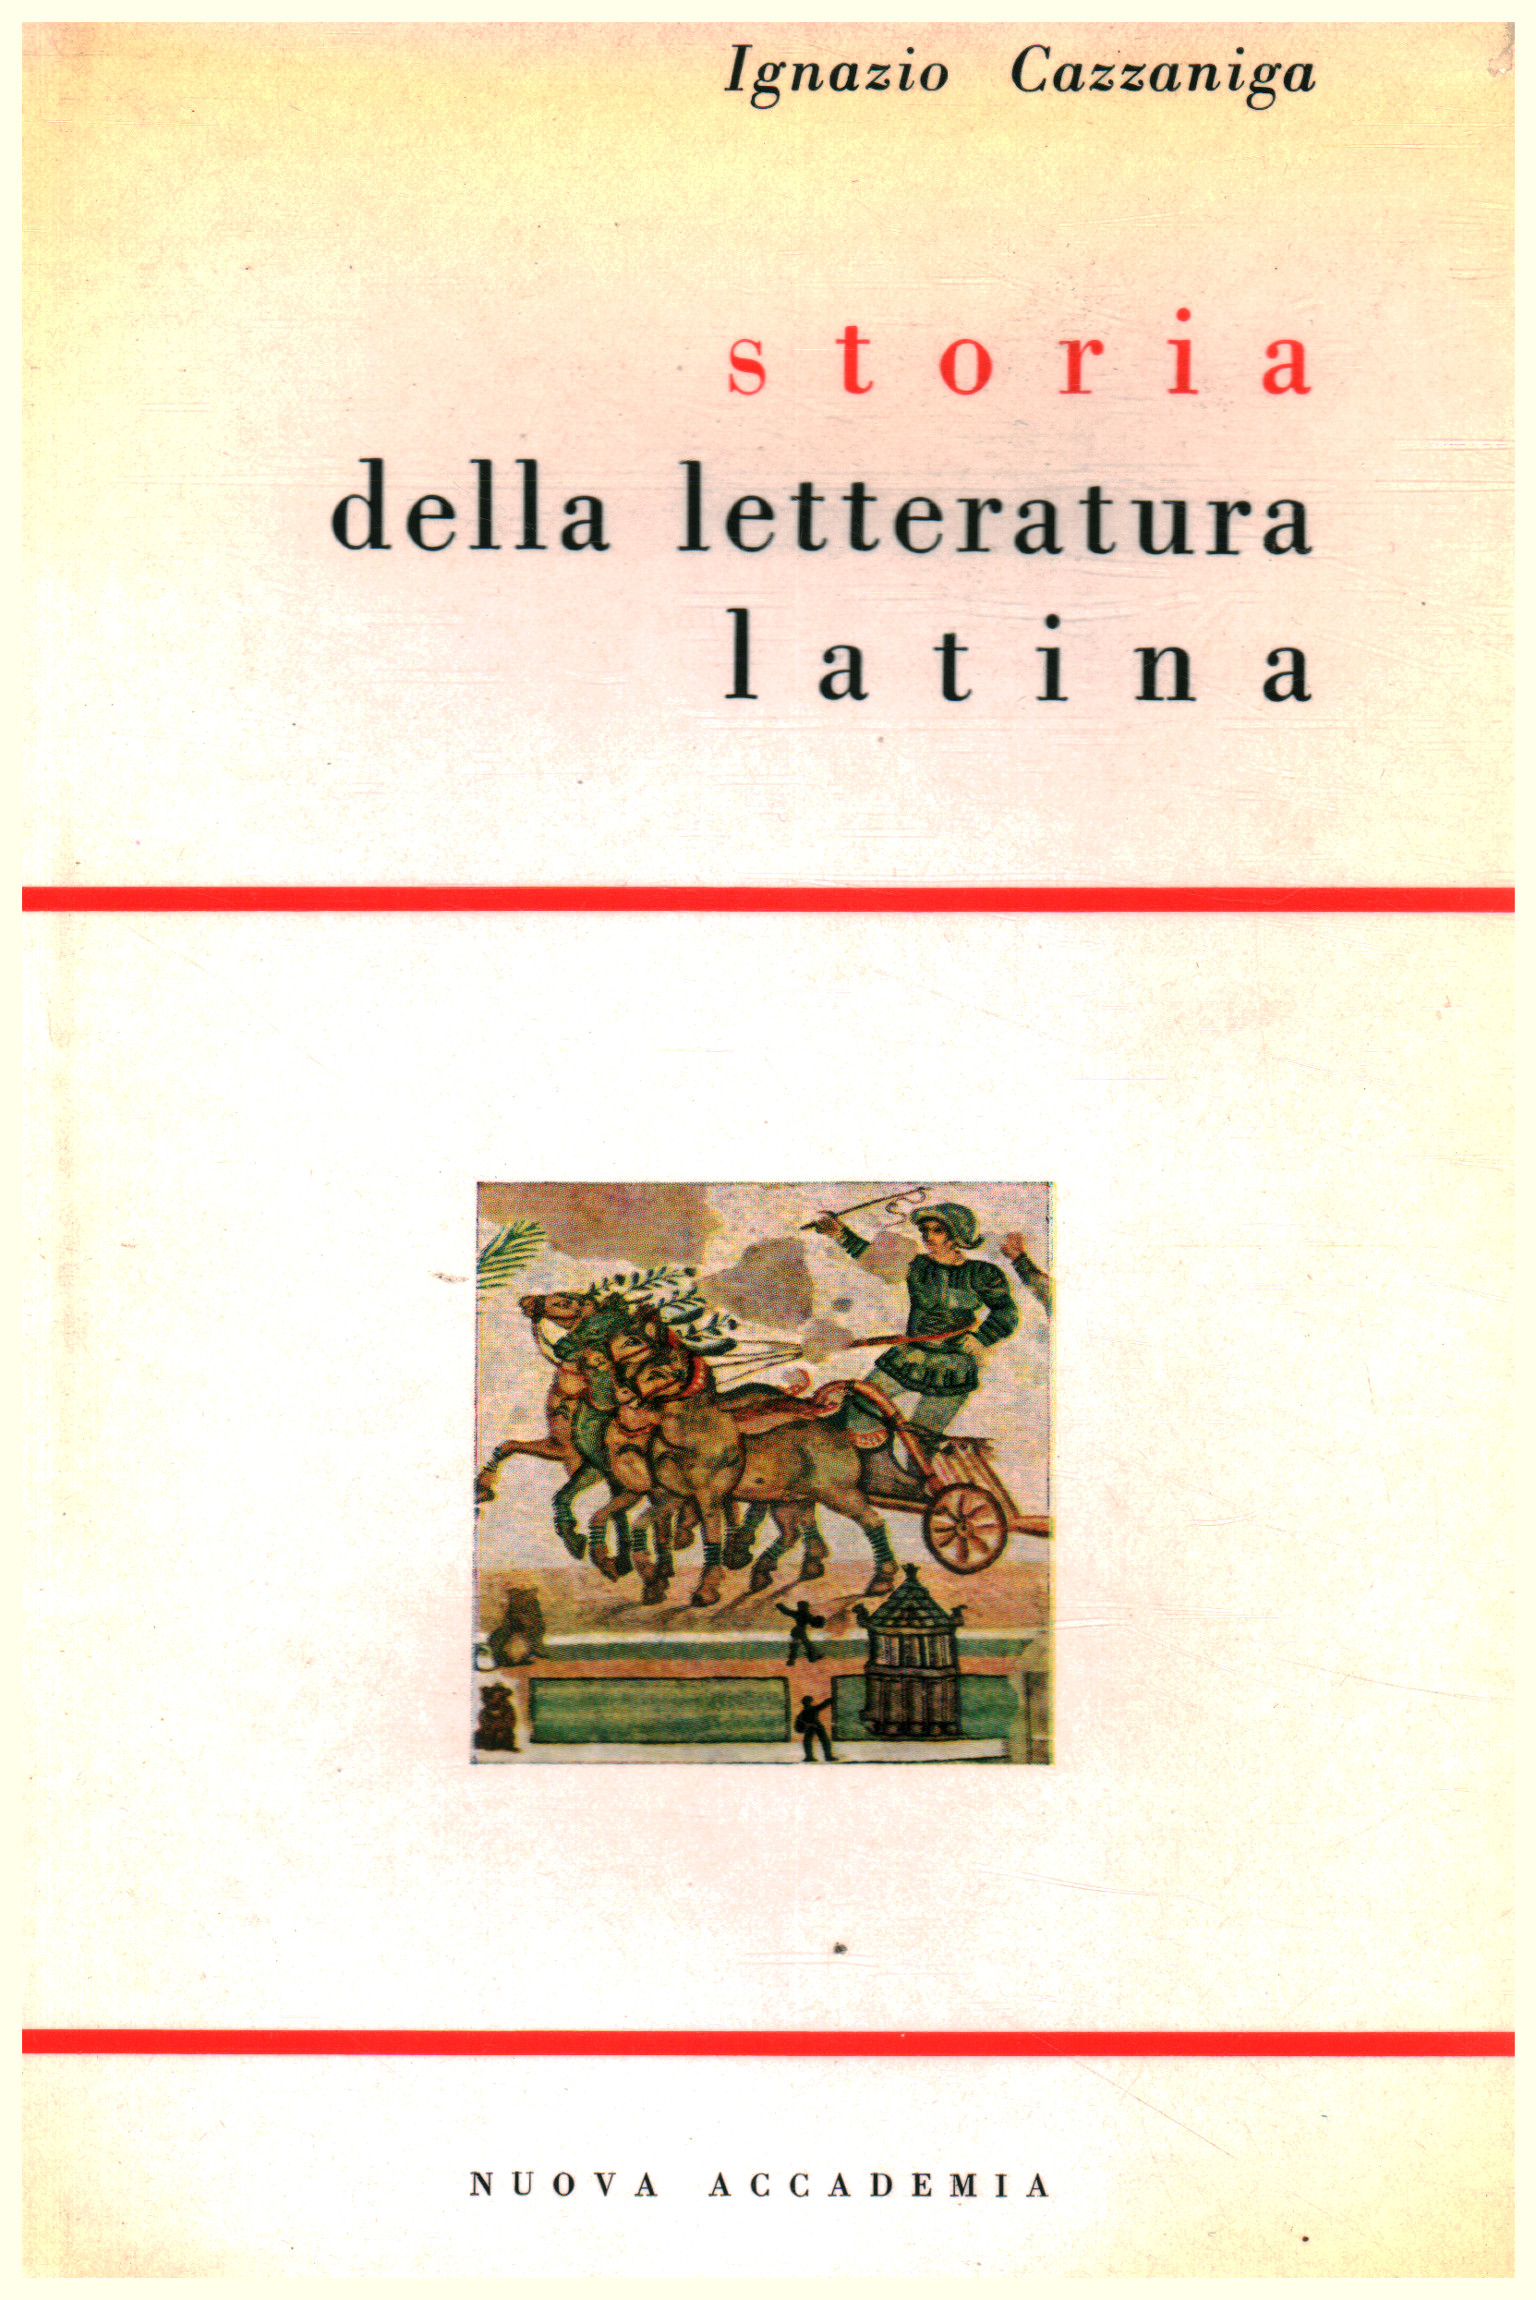 Histoire de la littérature latine, Ignazio Cazzaniga